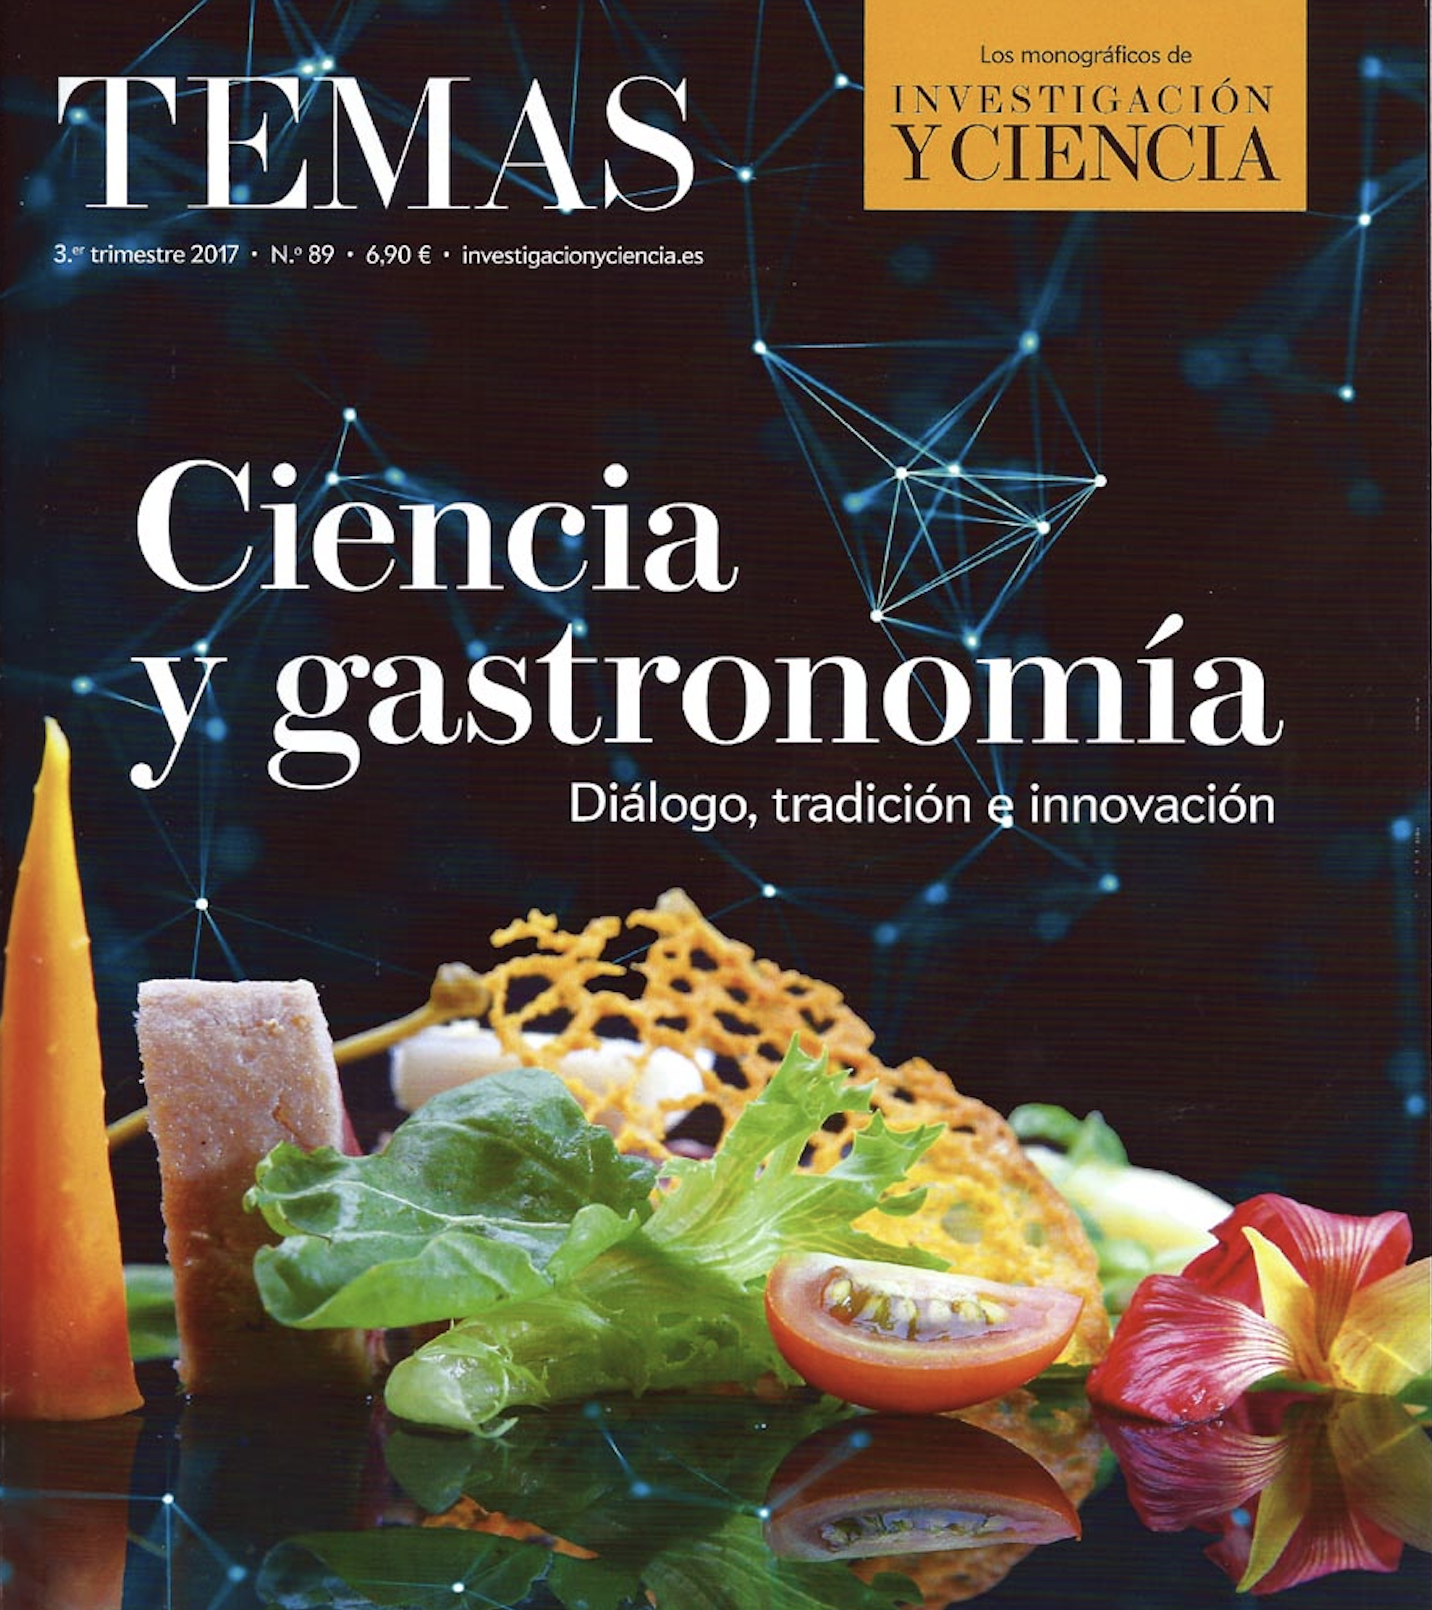 Pere Castells i Claudi Mans participen a un monogràfic sobre ciència i gastronomia